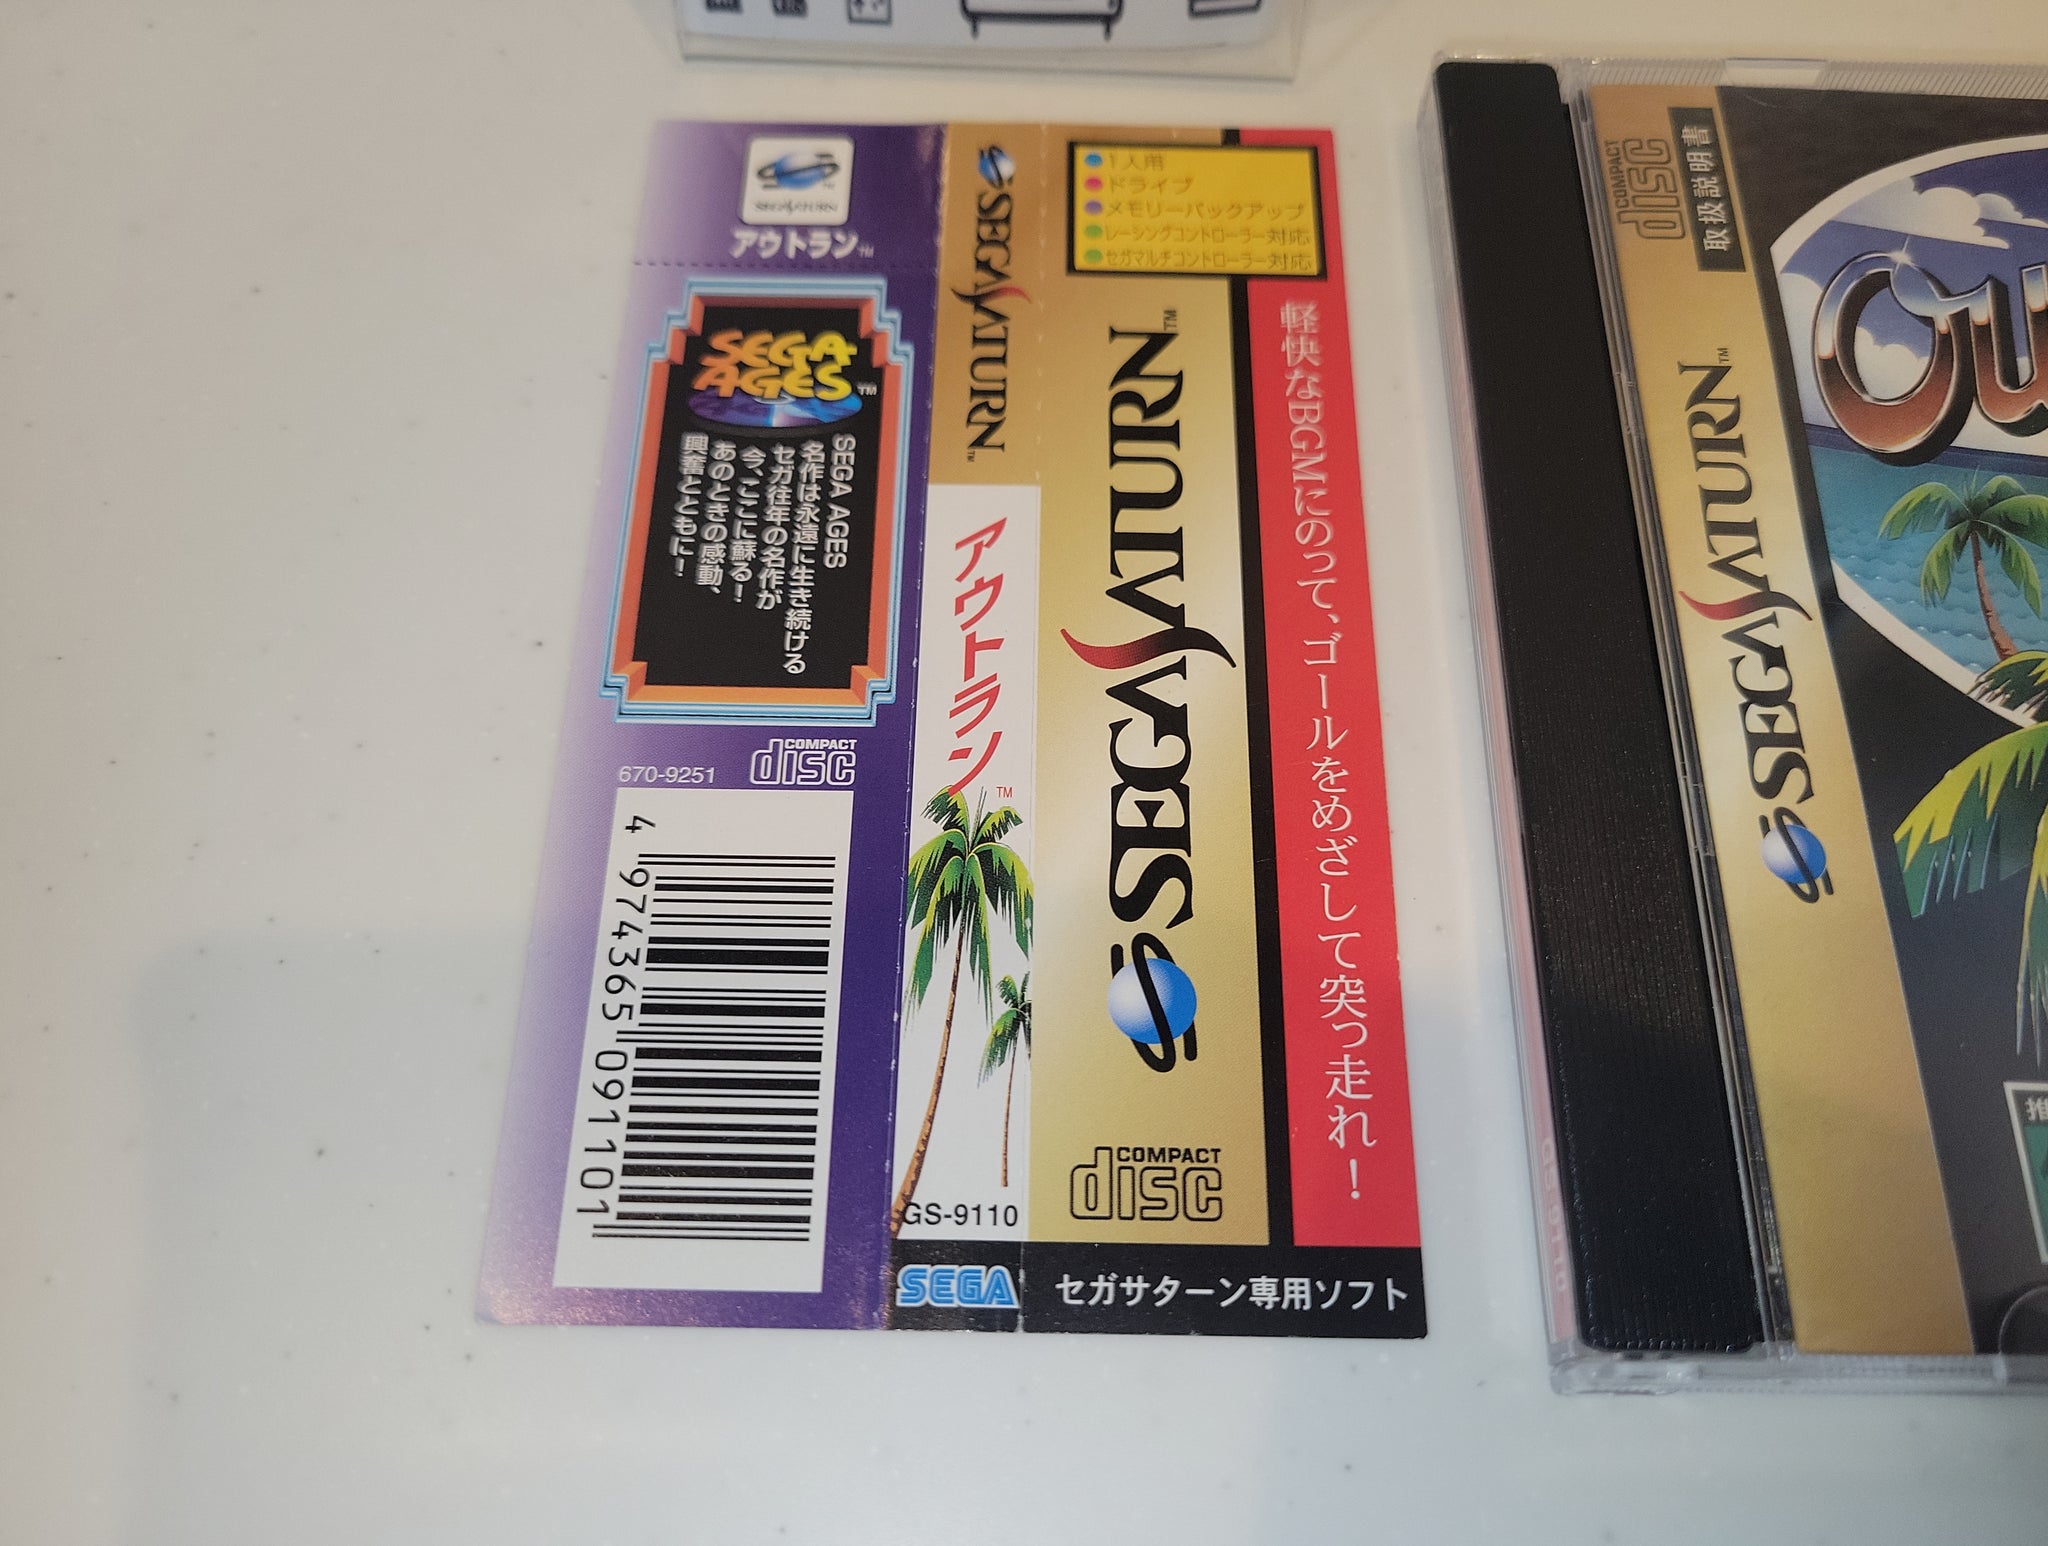 Sega Ages: OutRun - Sega Saturn sat stn – The Emporium RetroGames